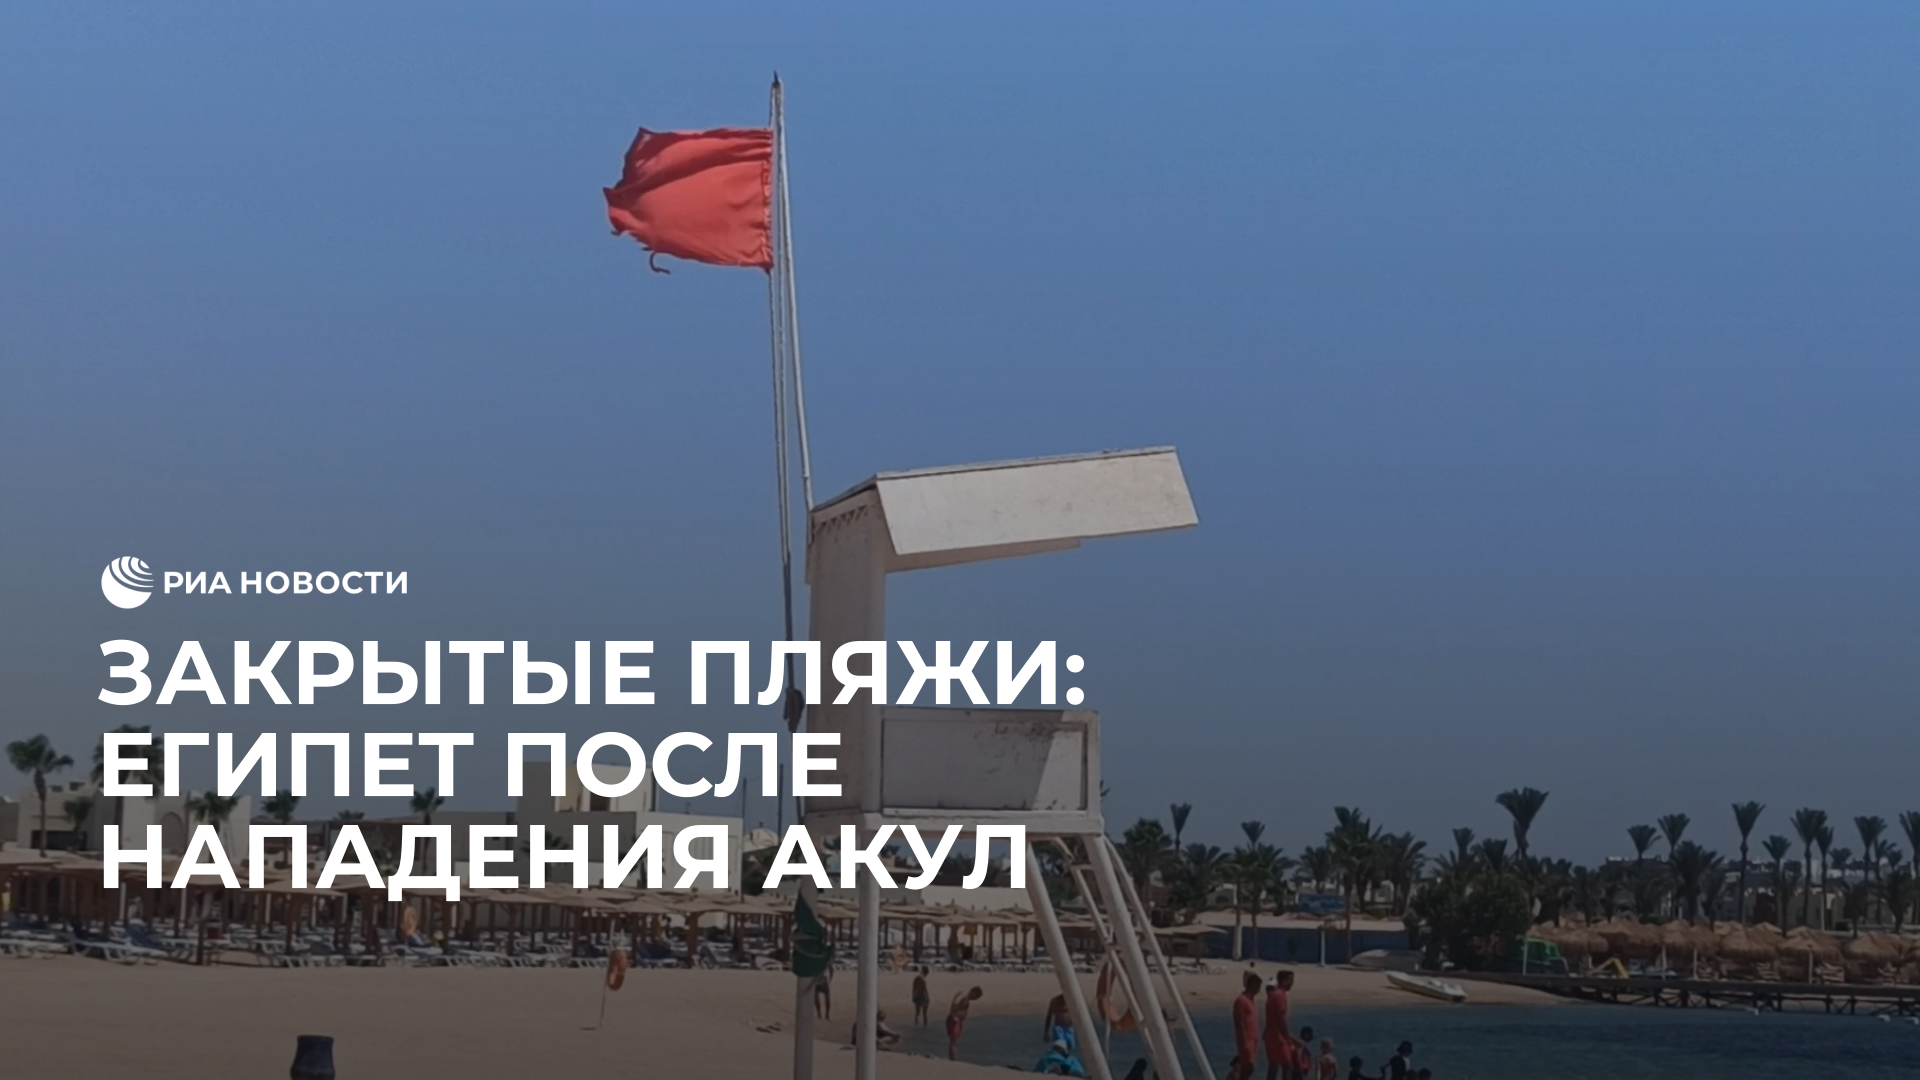 Египет после нападения акул закрыл некоторые пляжи